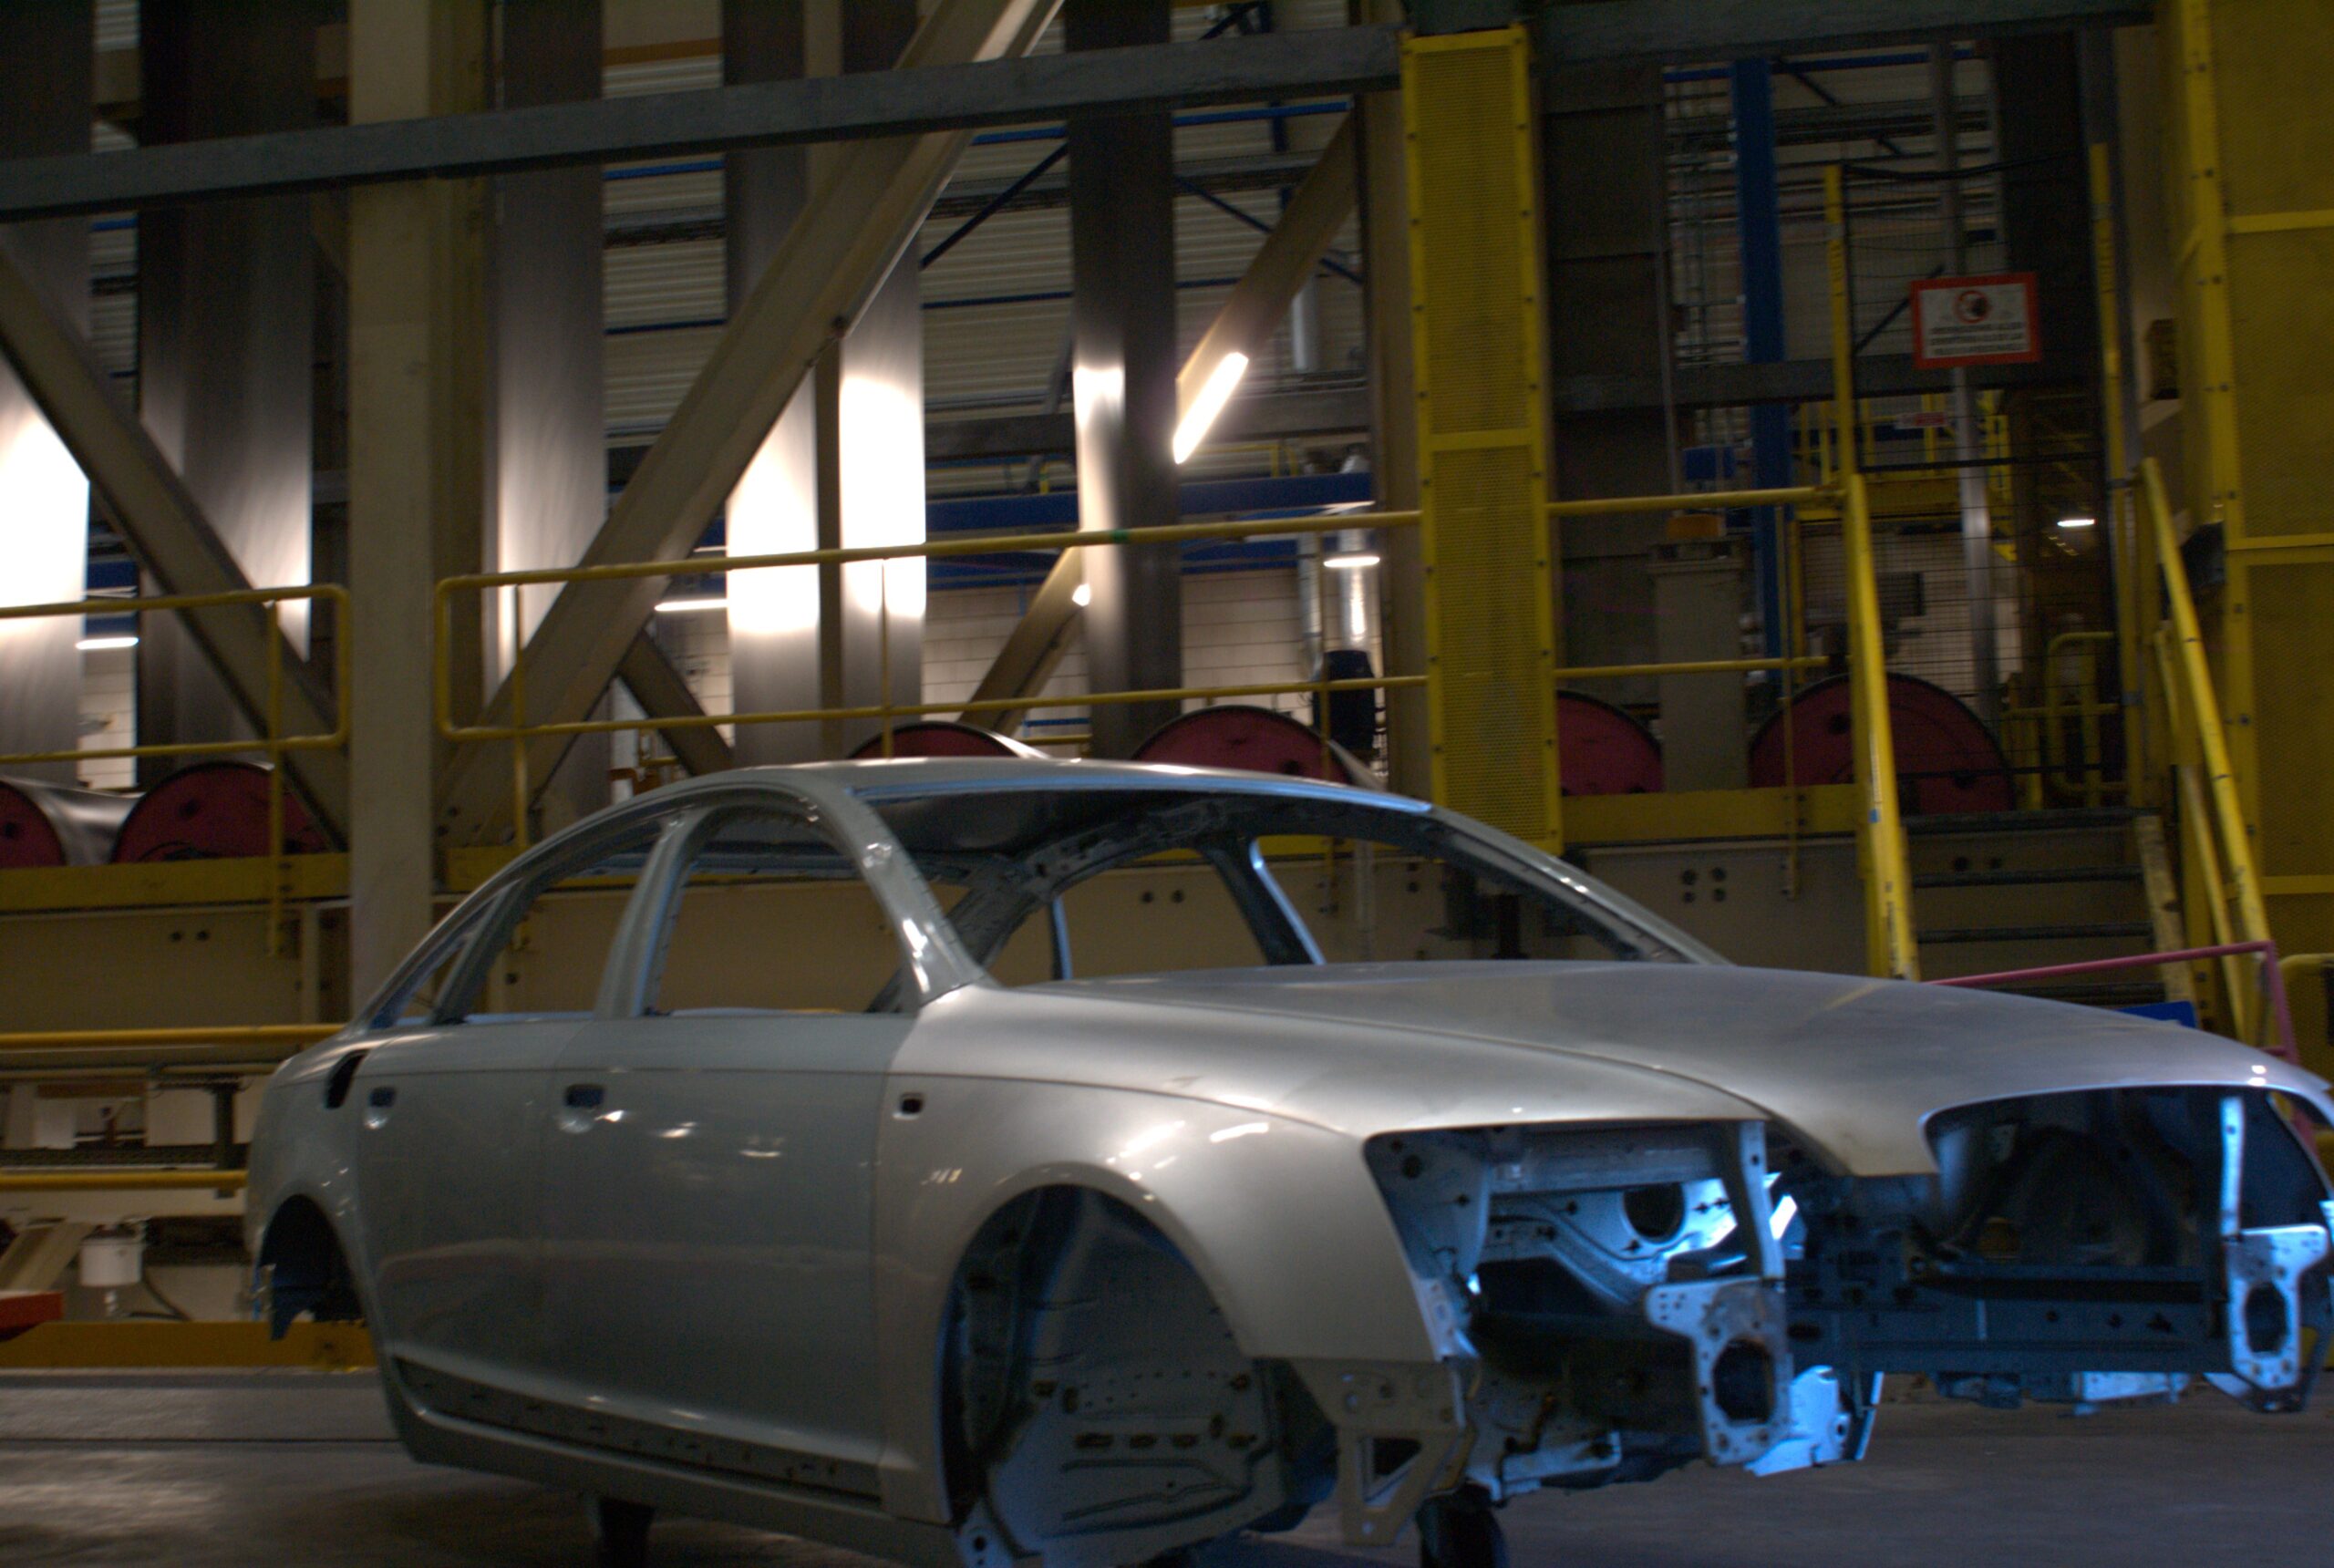 Binnen in één van de fabrieken van Tata Steel. Het metaal wordt gebruikt voor bijvoorbeeld de auto-industrie.